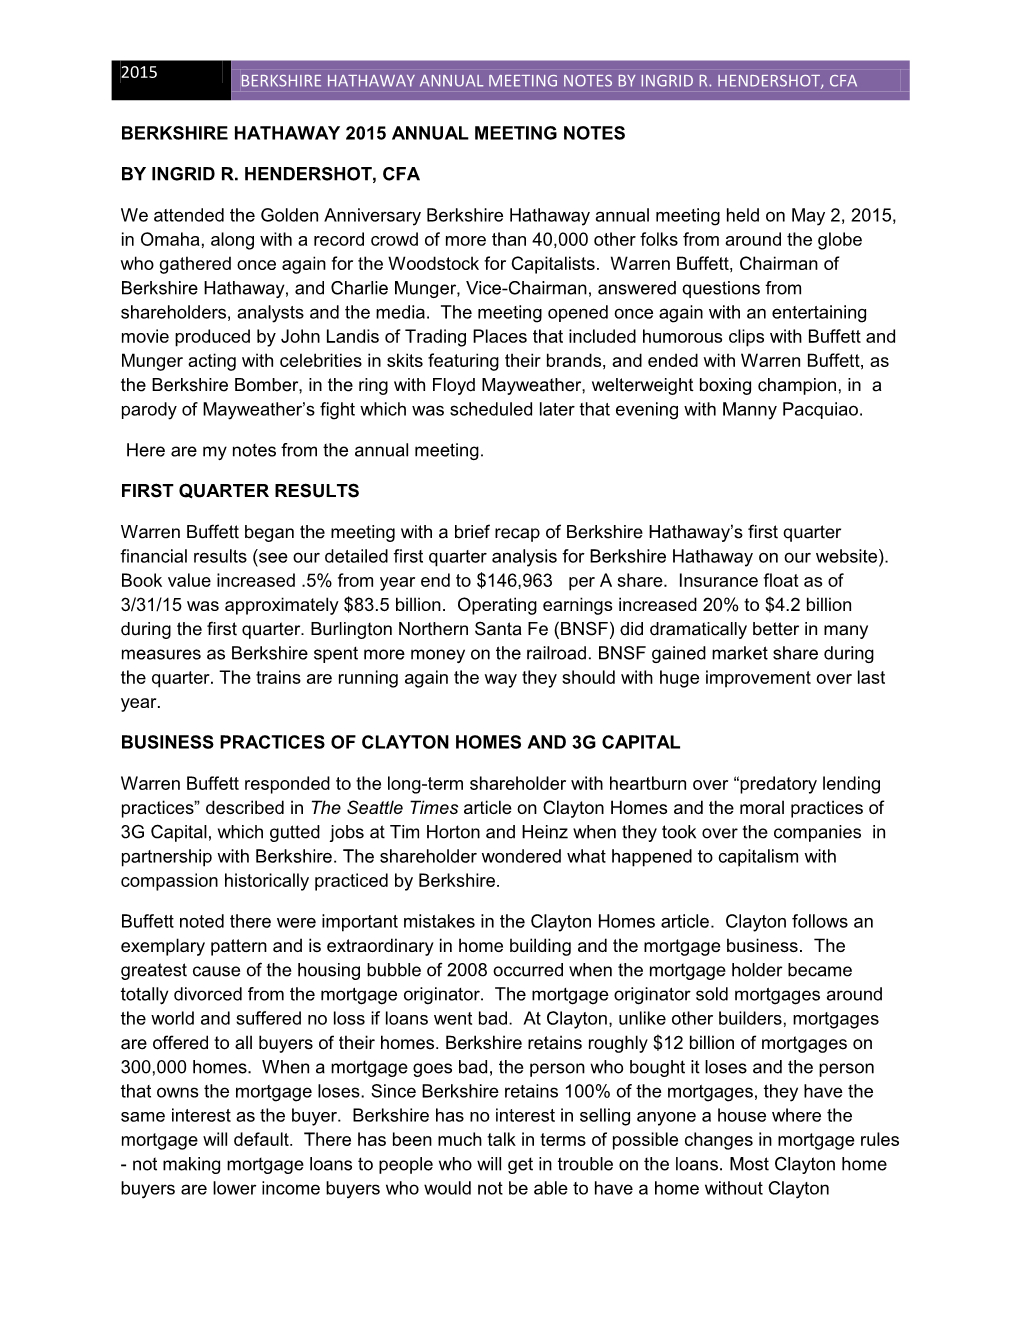 Berkshire Hathaway Annual Meeting Notes by Ingrid R. Hendershot, Cfa